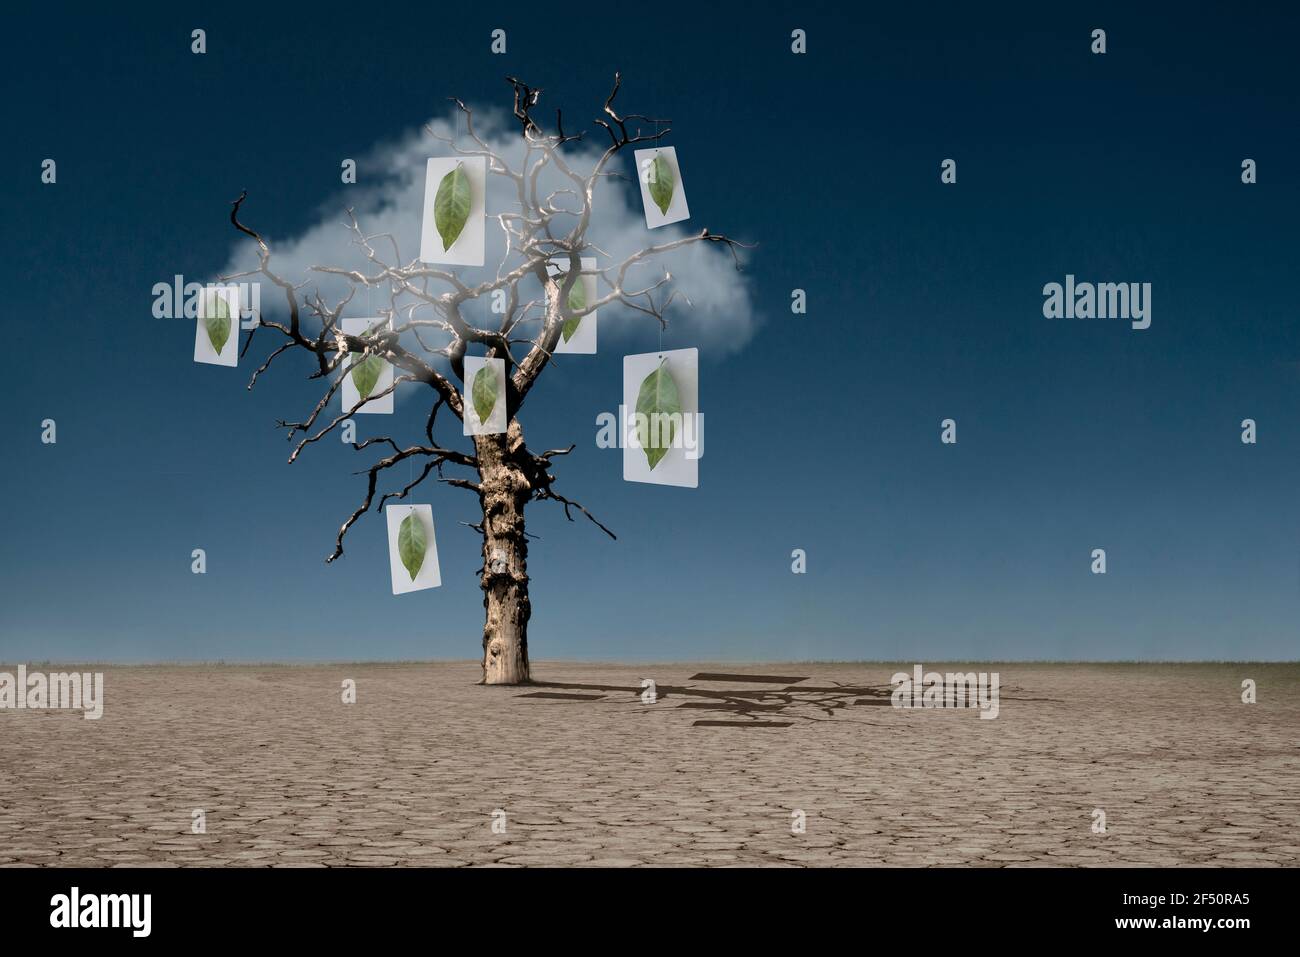 Photos de feuilles accrochées à un arbre mort dans le désert Banque D'Images